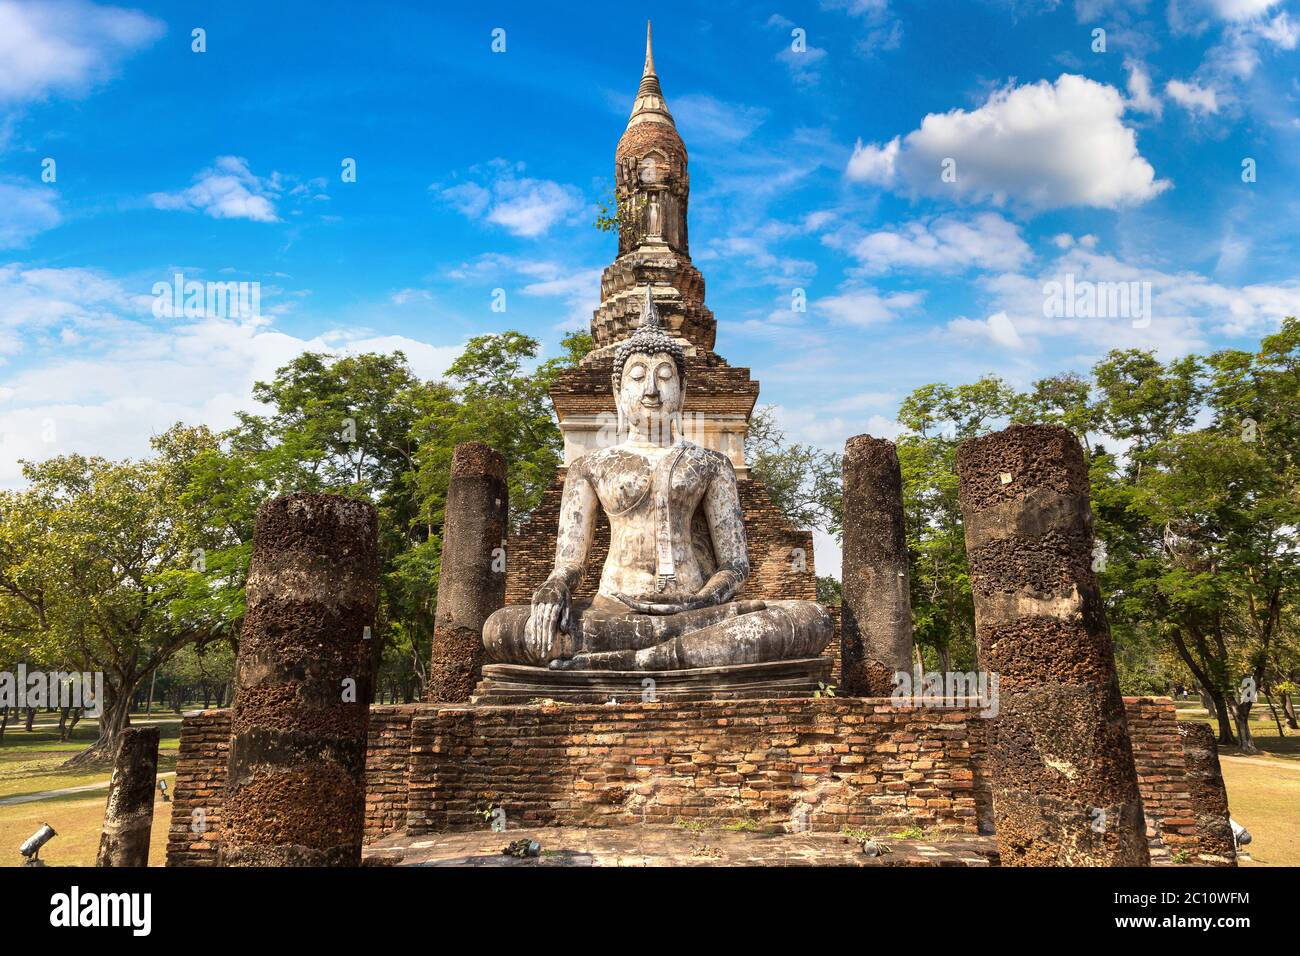 Tempio di Traphang Ngoen nel parco storico di Sukhothai, Thailandia in una giornata estiva Foto Stock